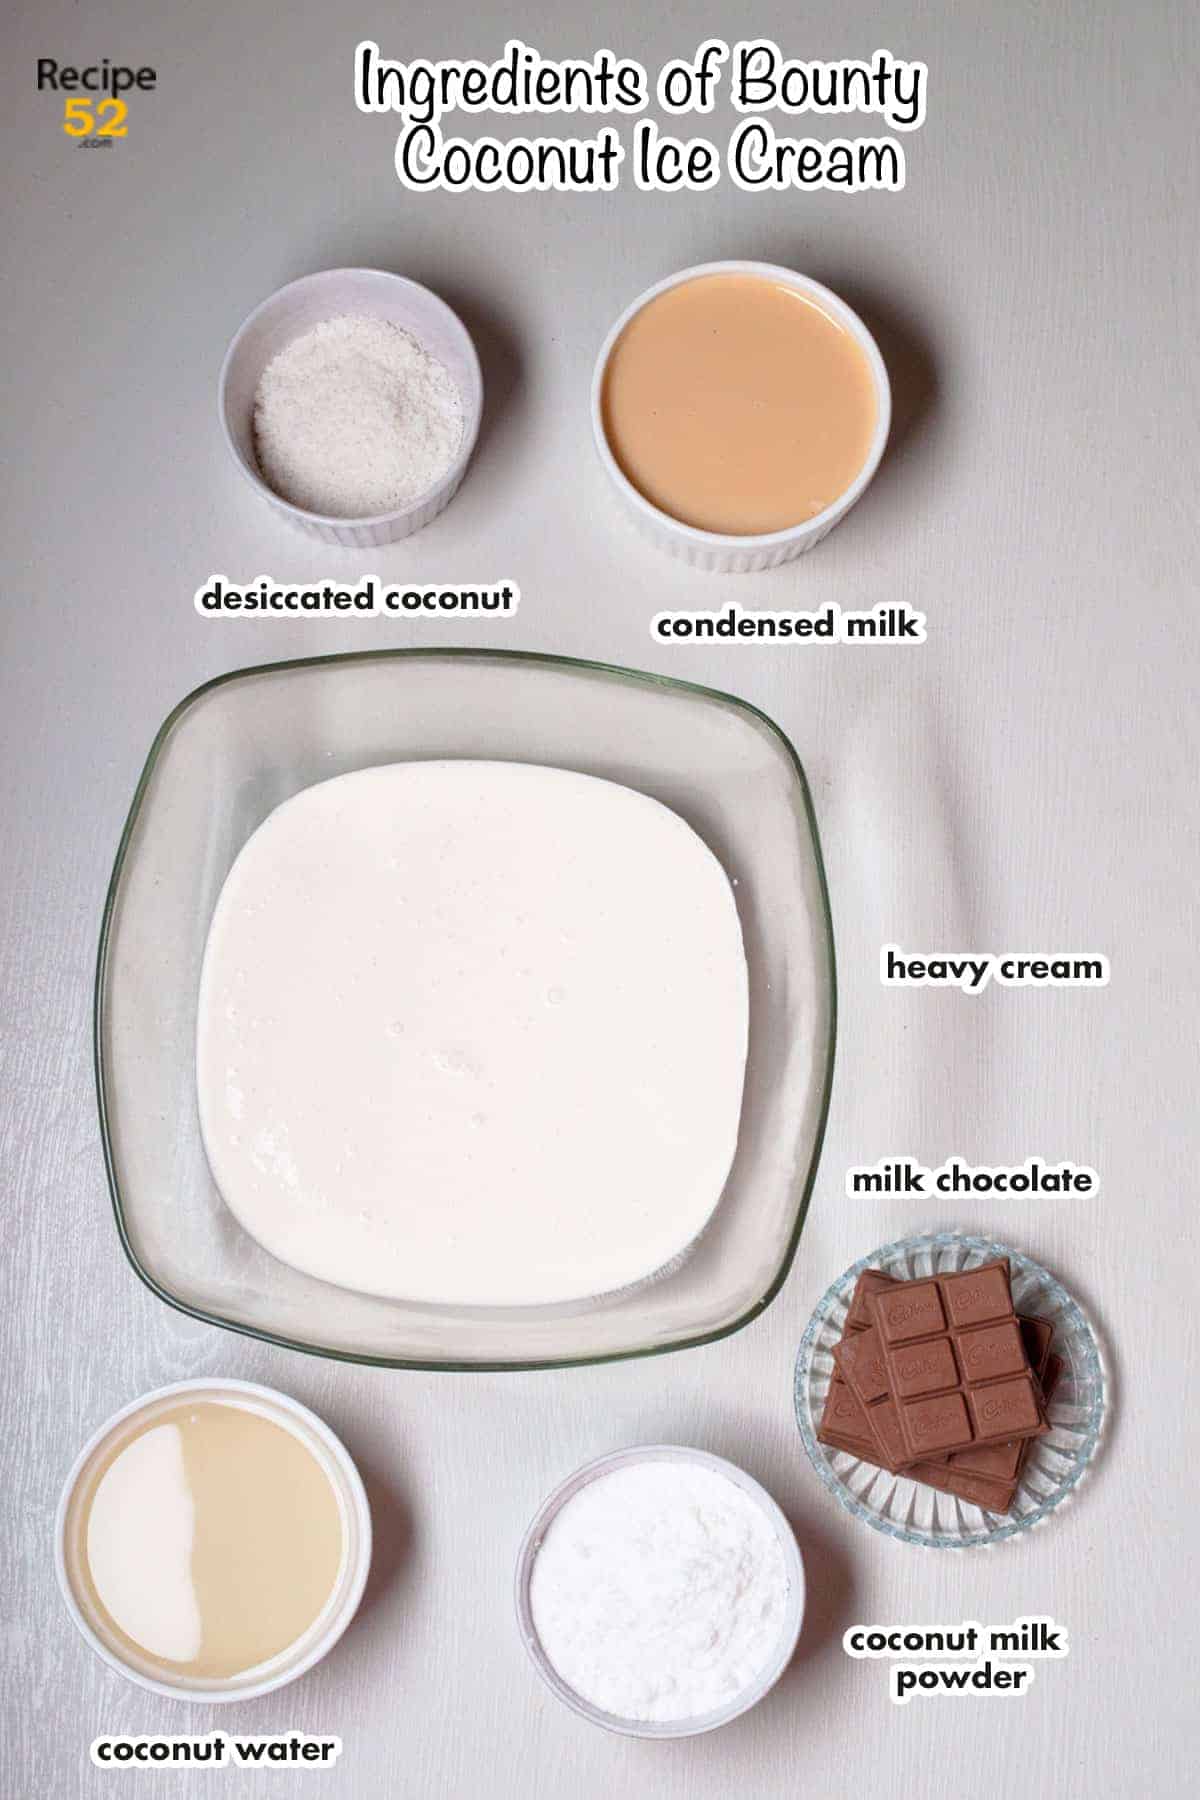 Ingredients of coconut bounty ice cream.